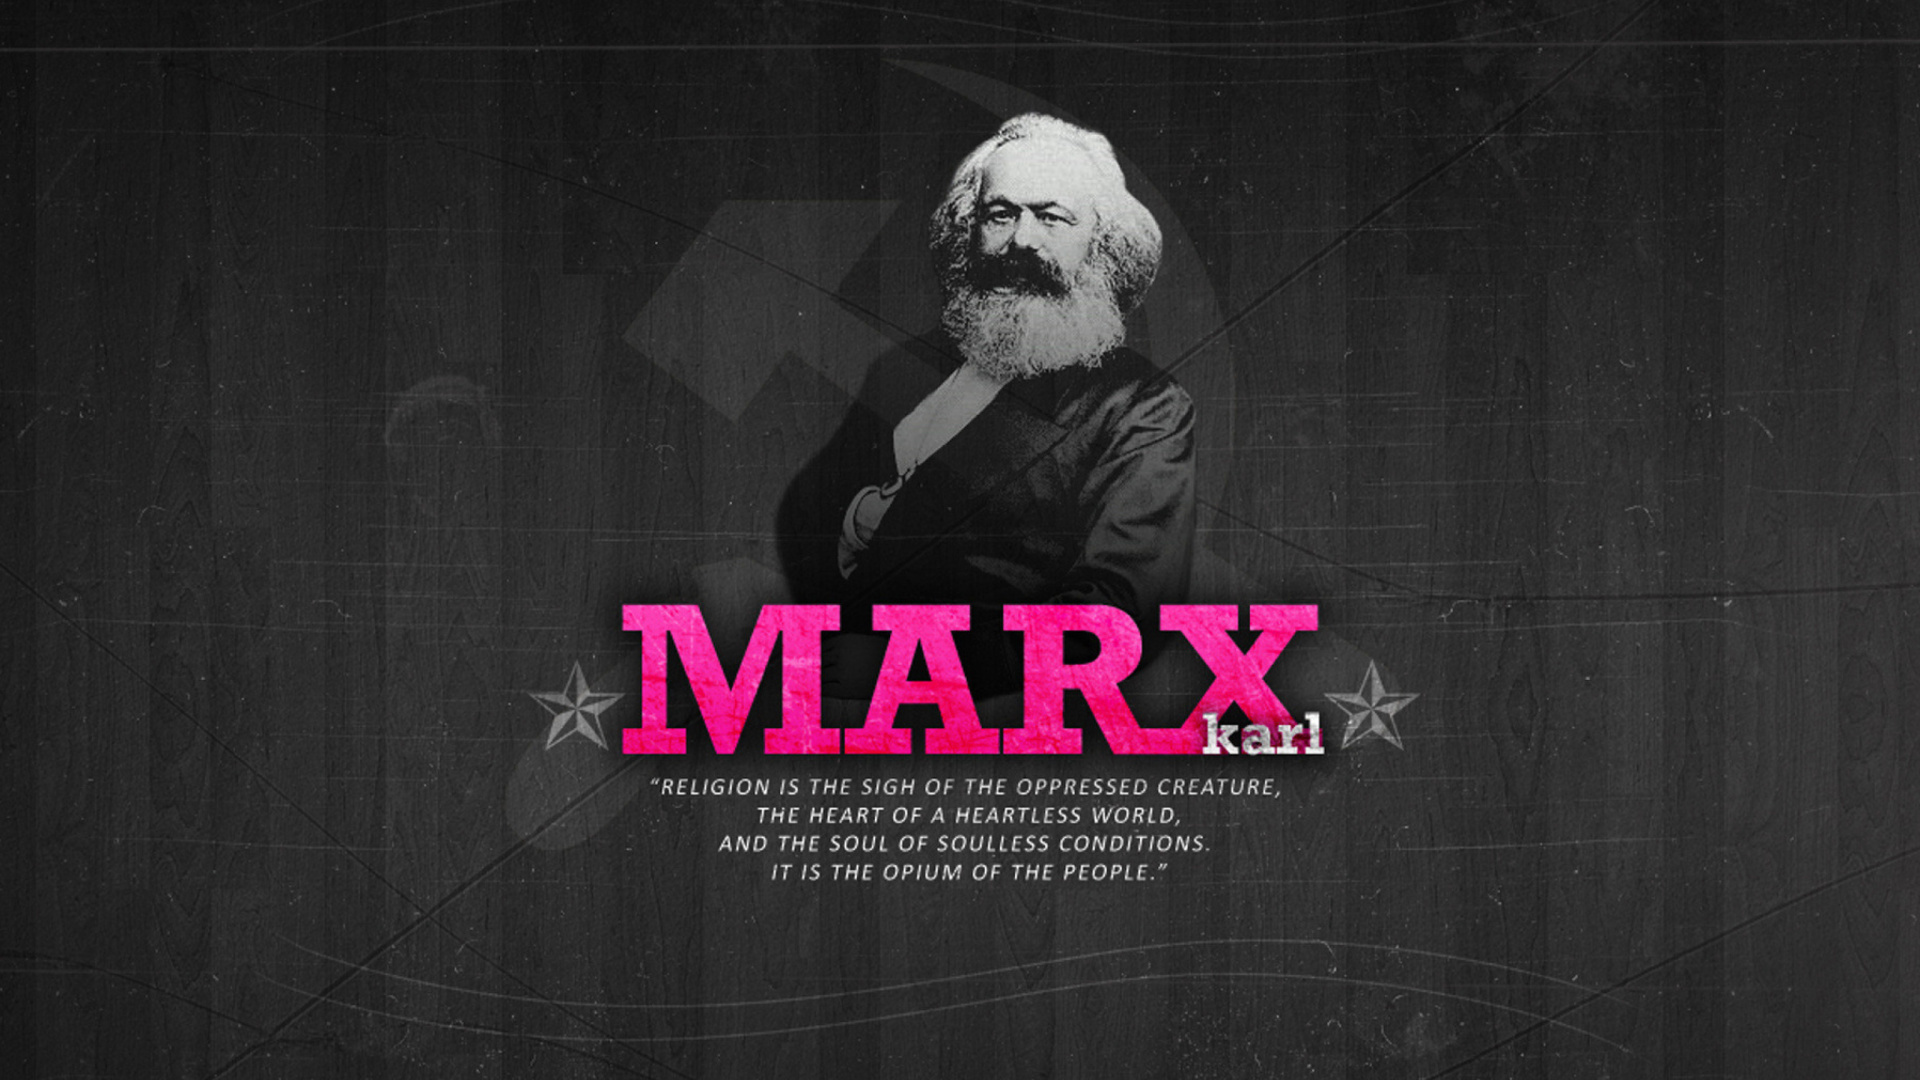 Politician Karl Marx screenshot #1 1920x1080